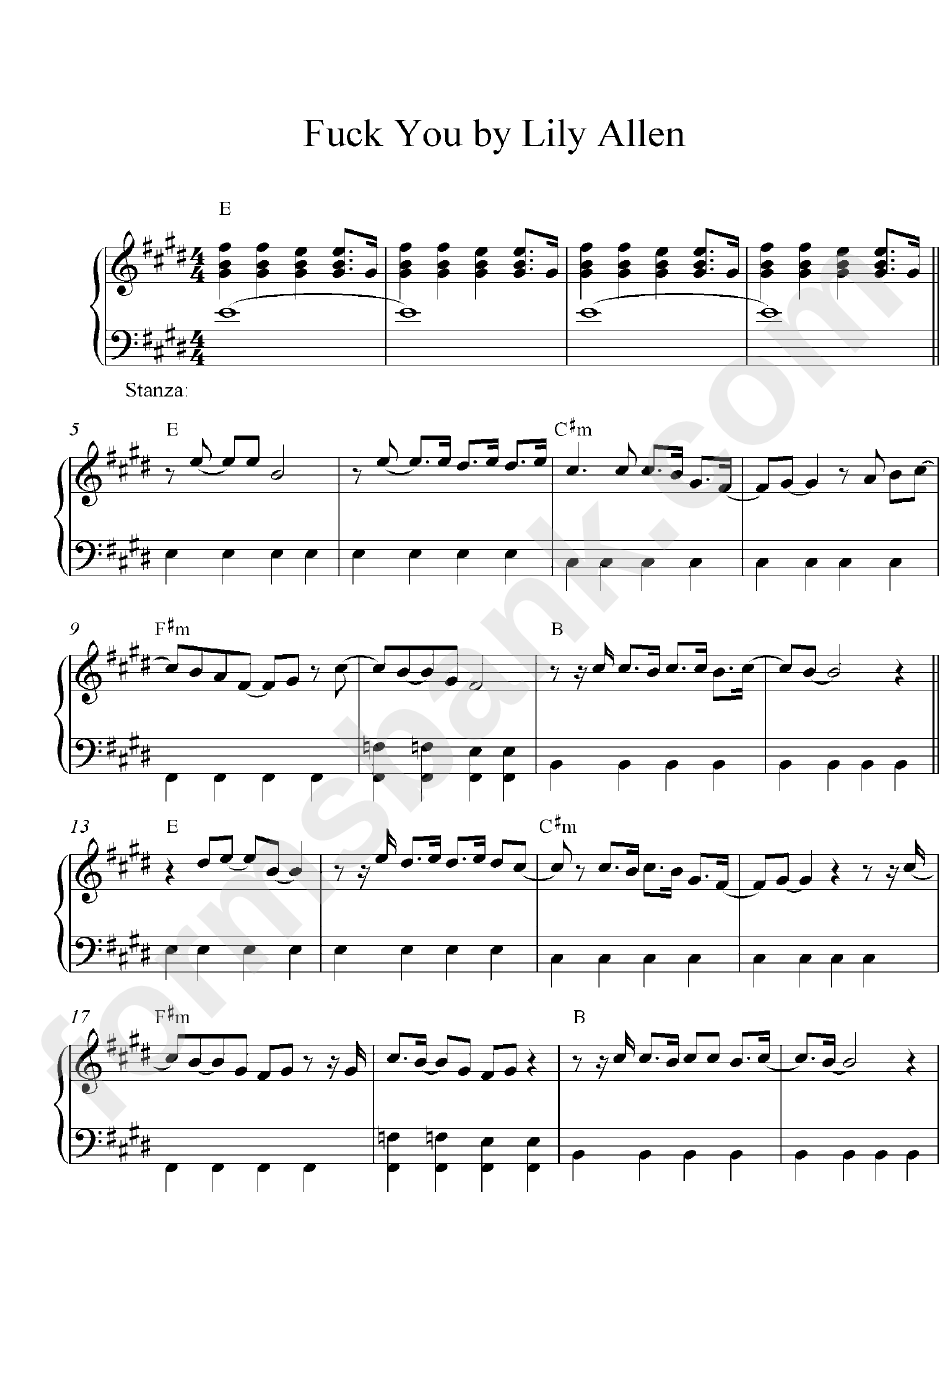 Fuck You - Lily Allen (Piano Sheet Music)